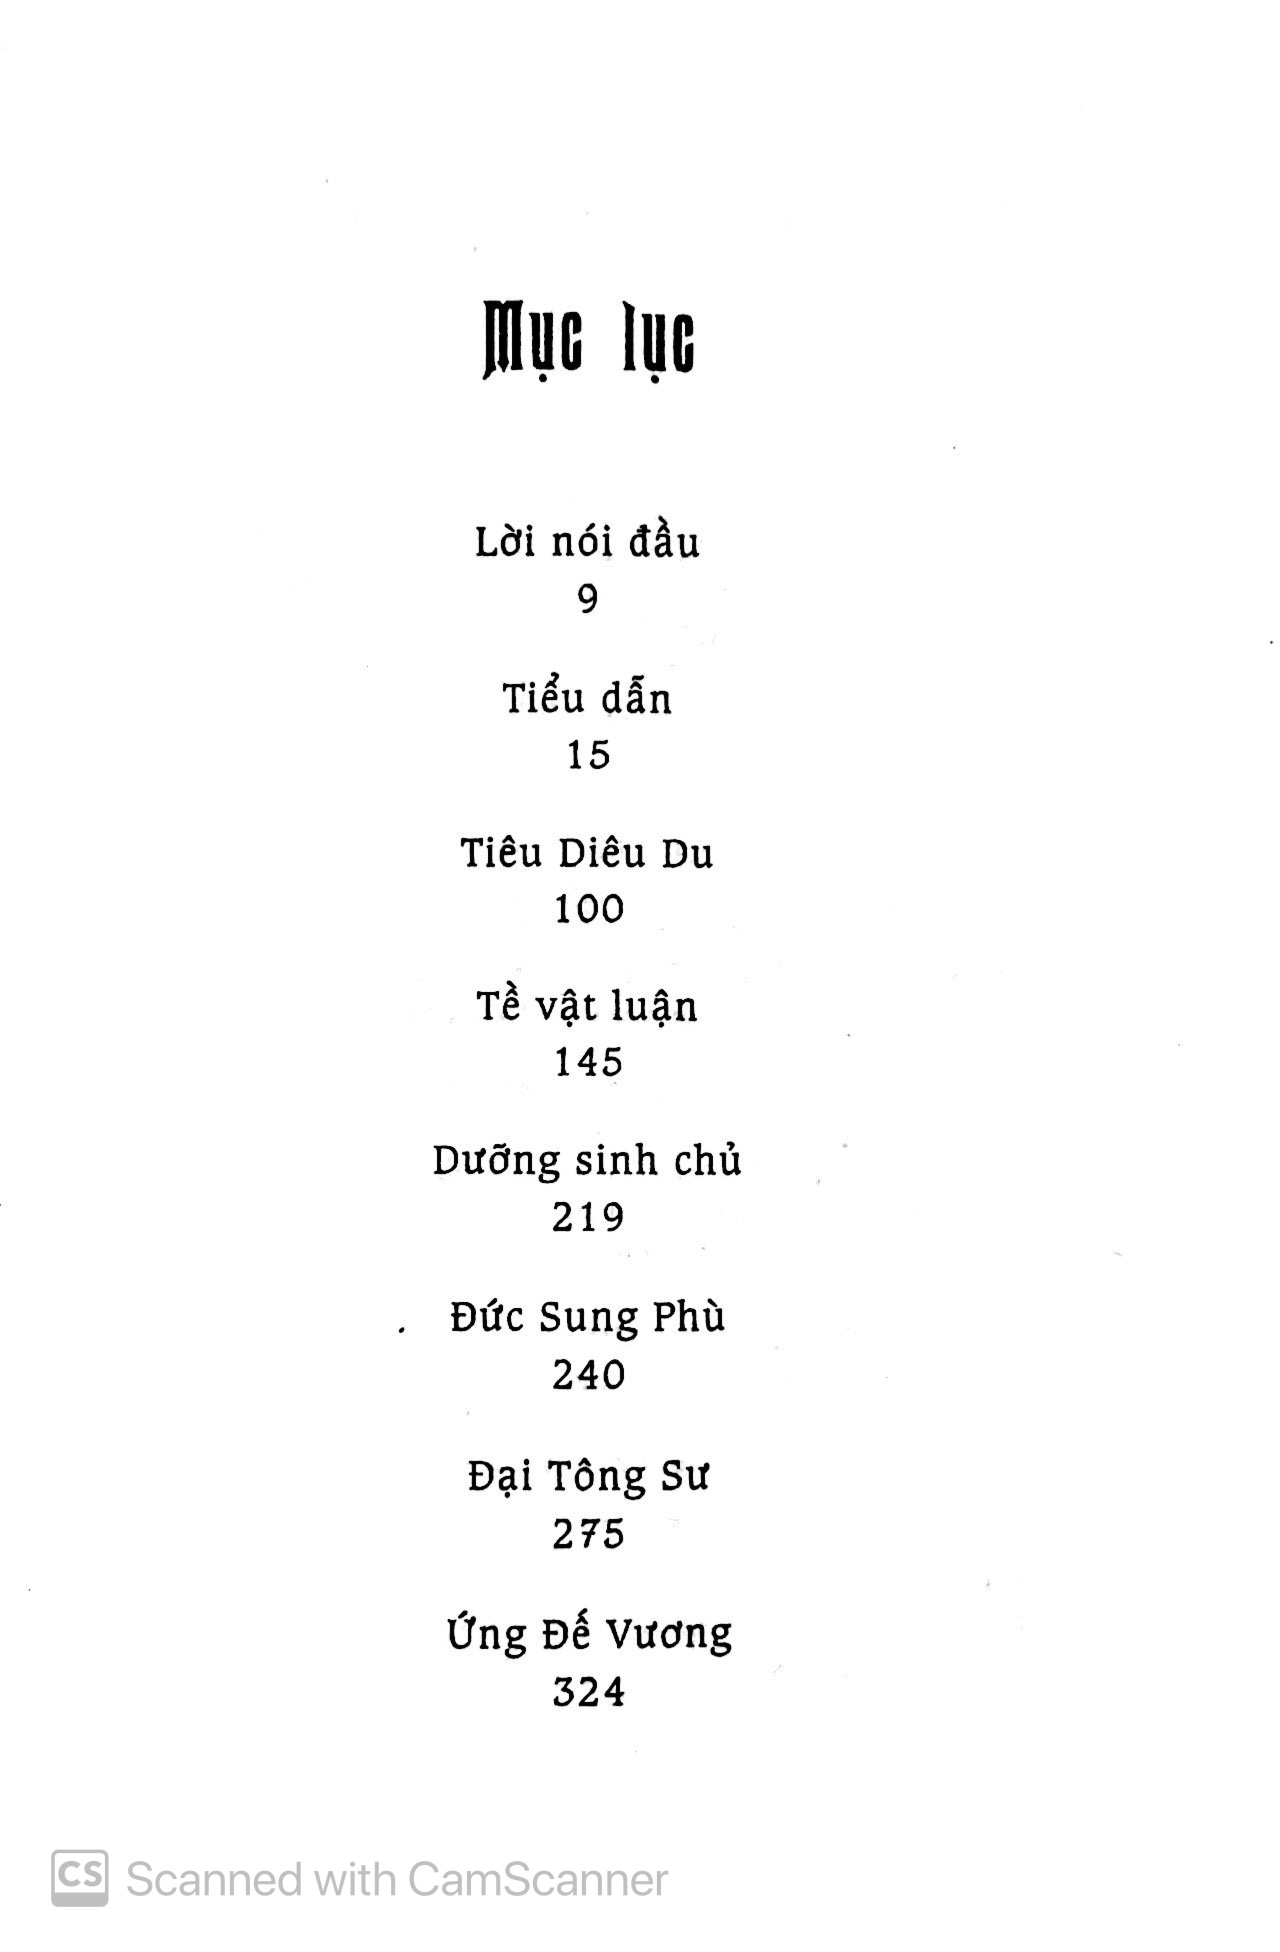 Trang Tử Nam Hoa Kinh - Tập 1 PDF